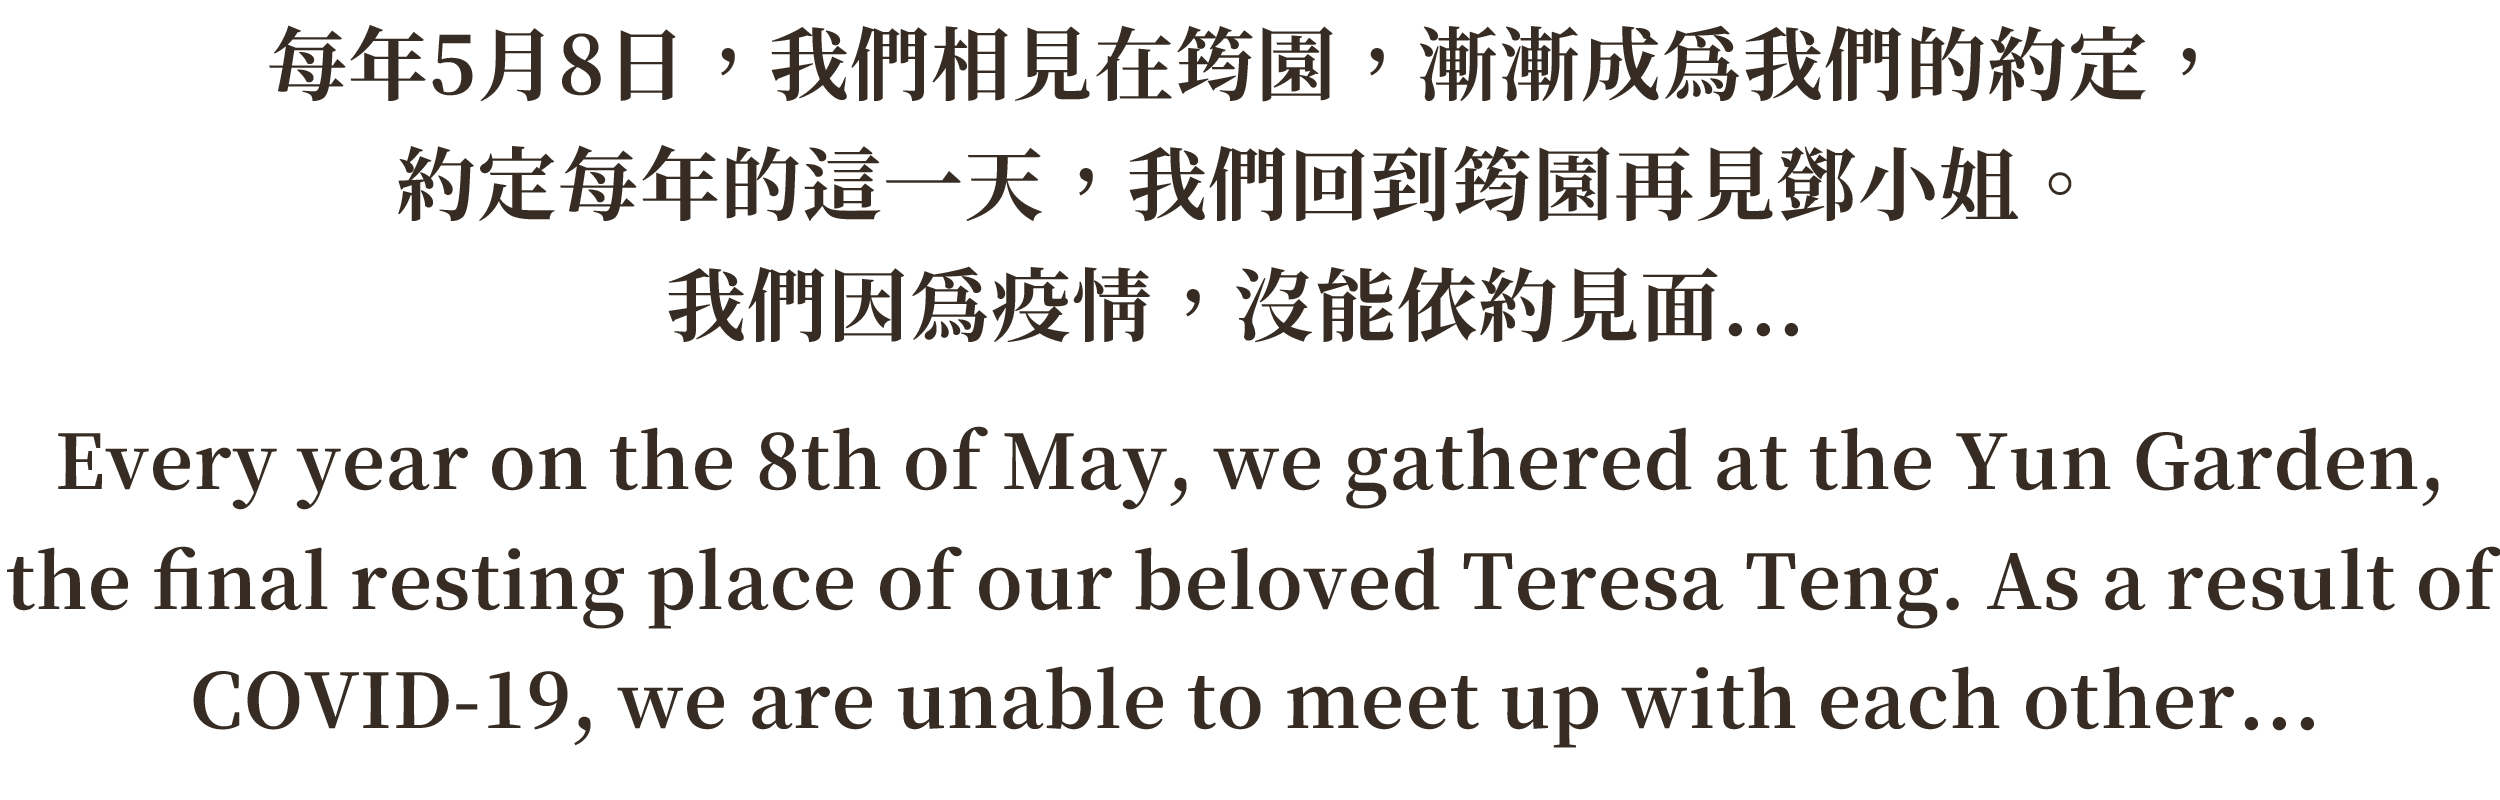 每年5月8日，我們相見在筠園，漸漸成為我們的約定，約定每年的這一天，我們回到筠園再見鄧小姐。2020年，我們因為疫情，沒能依約見面...Every year on the 8th of May, we gathered at the Yun Garden, the final resting place of our beloved Teresa Teng. As a result of COVID-19, we are unable to meet up with each other in 2020.